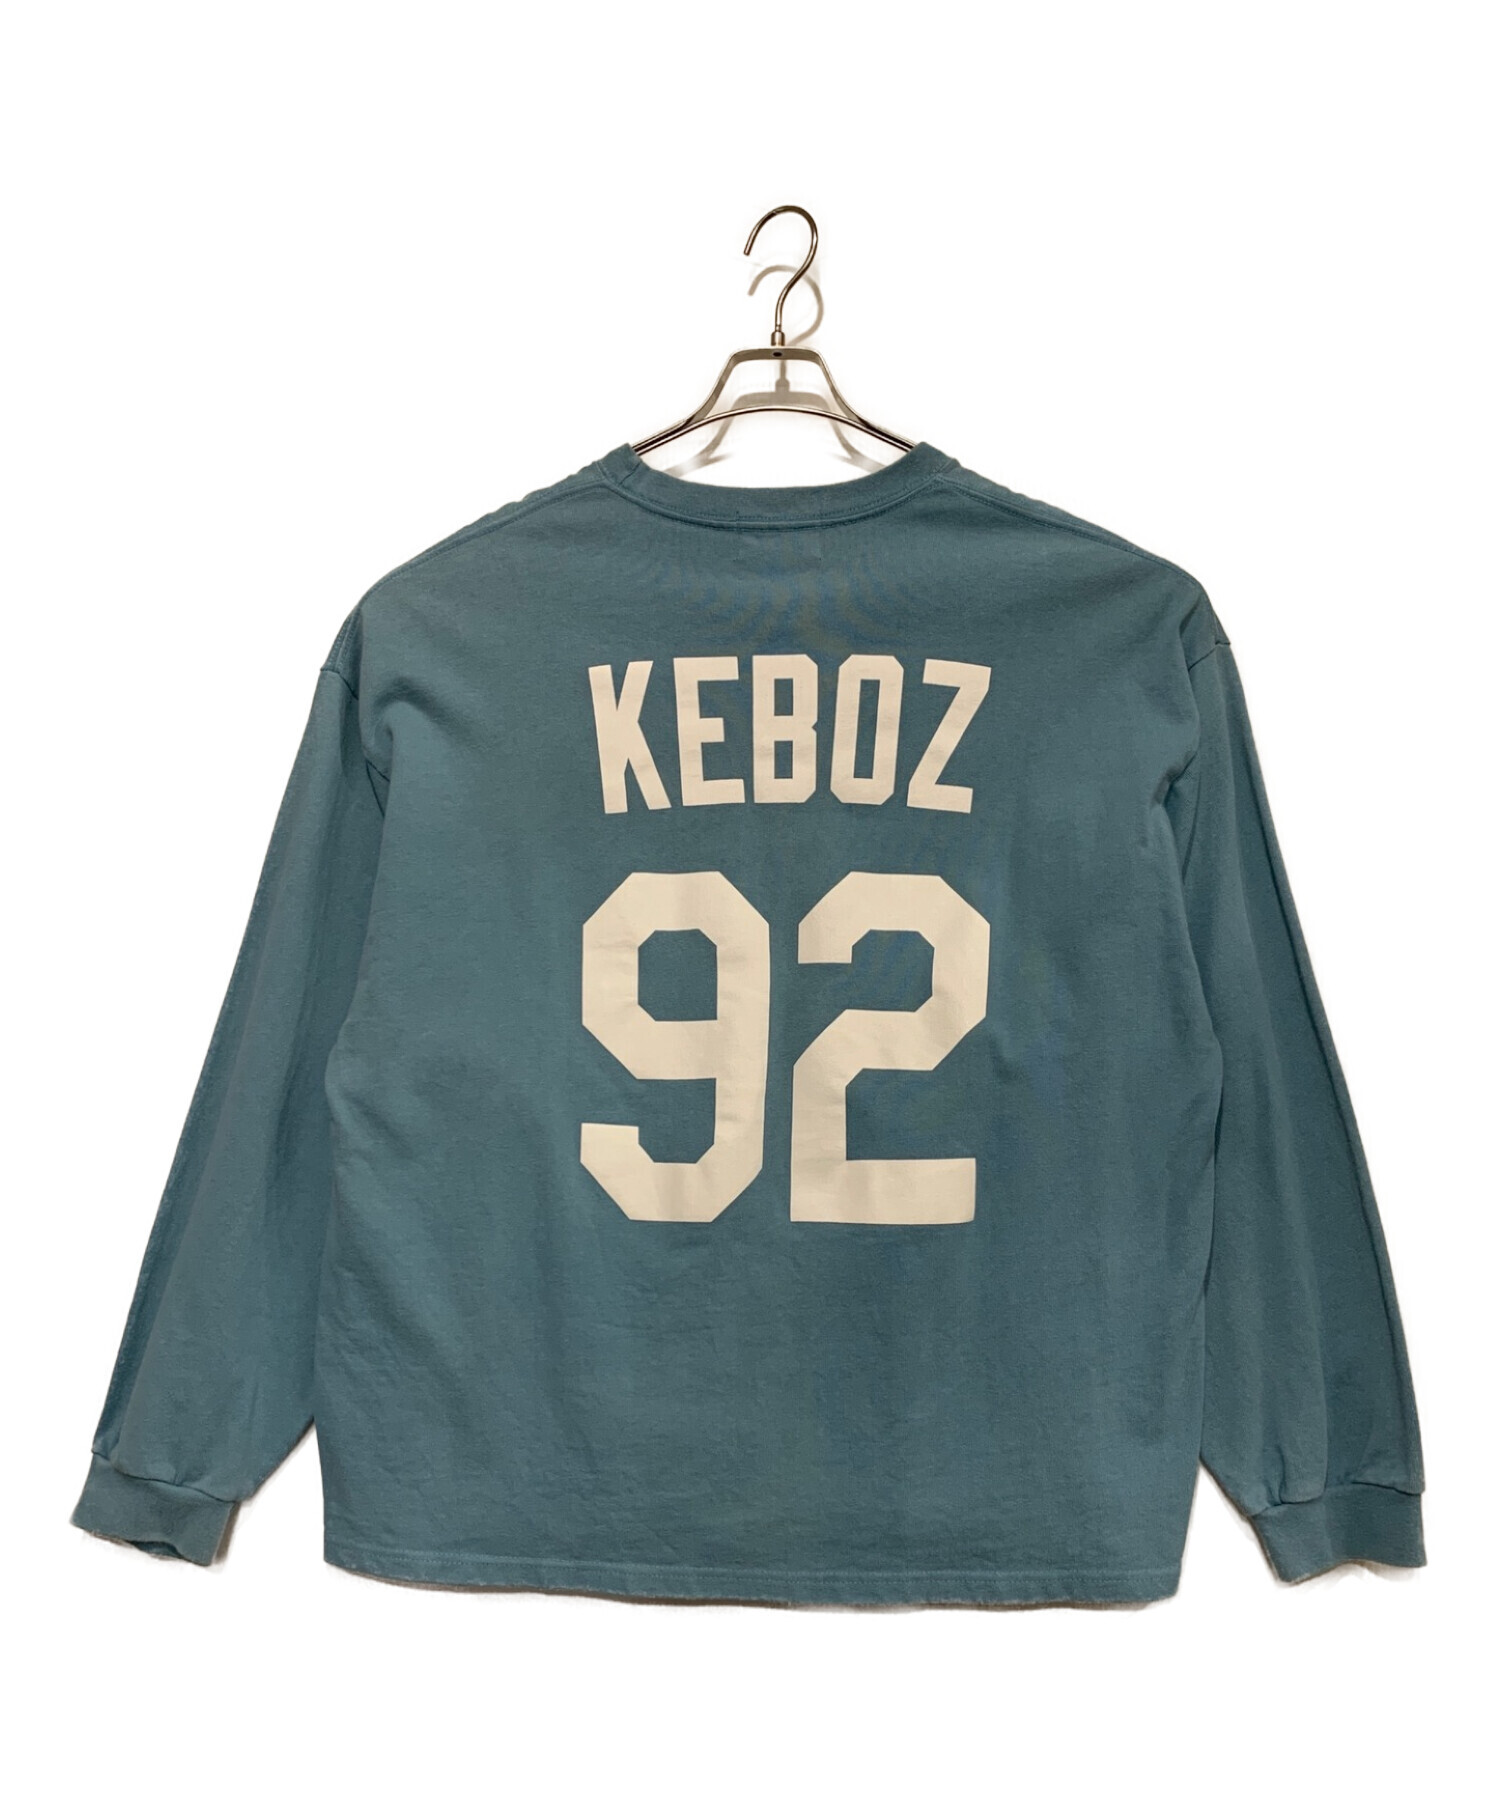 KEBOZ (ケボズ) スウェット ブルー サイズ:L